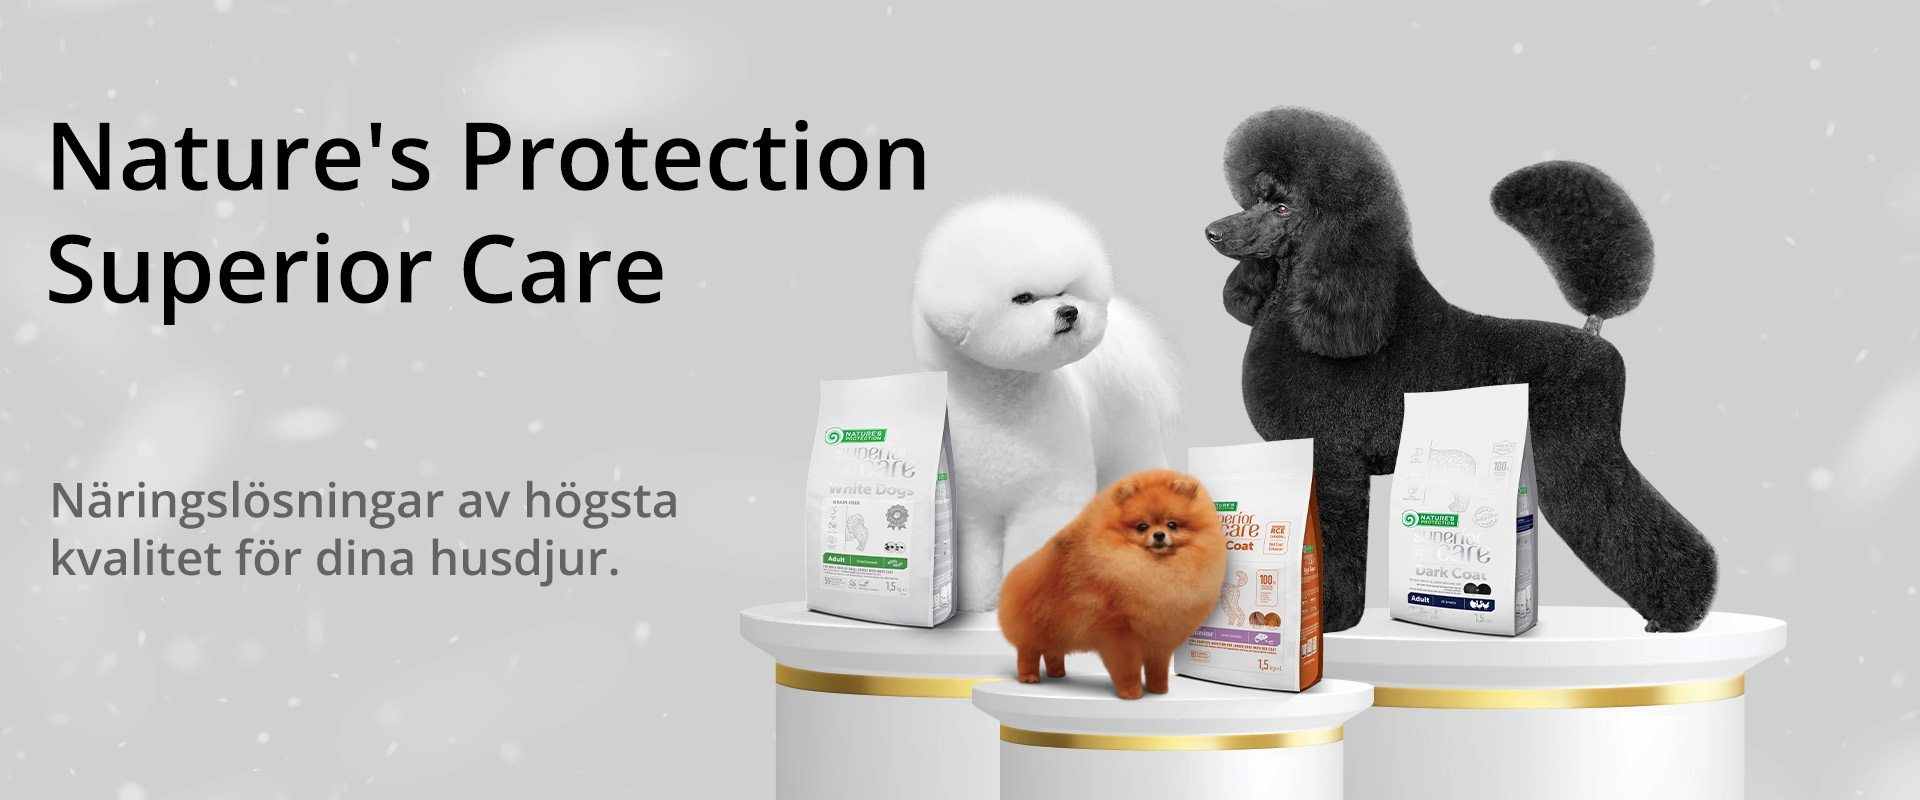 Nature's Protection Superior Care. Näringslösningar av högsta kvalitet för dina husdjur.